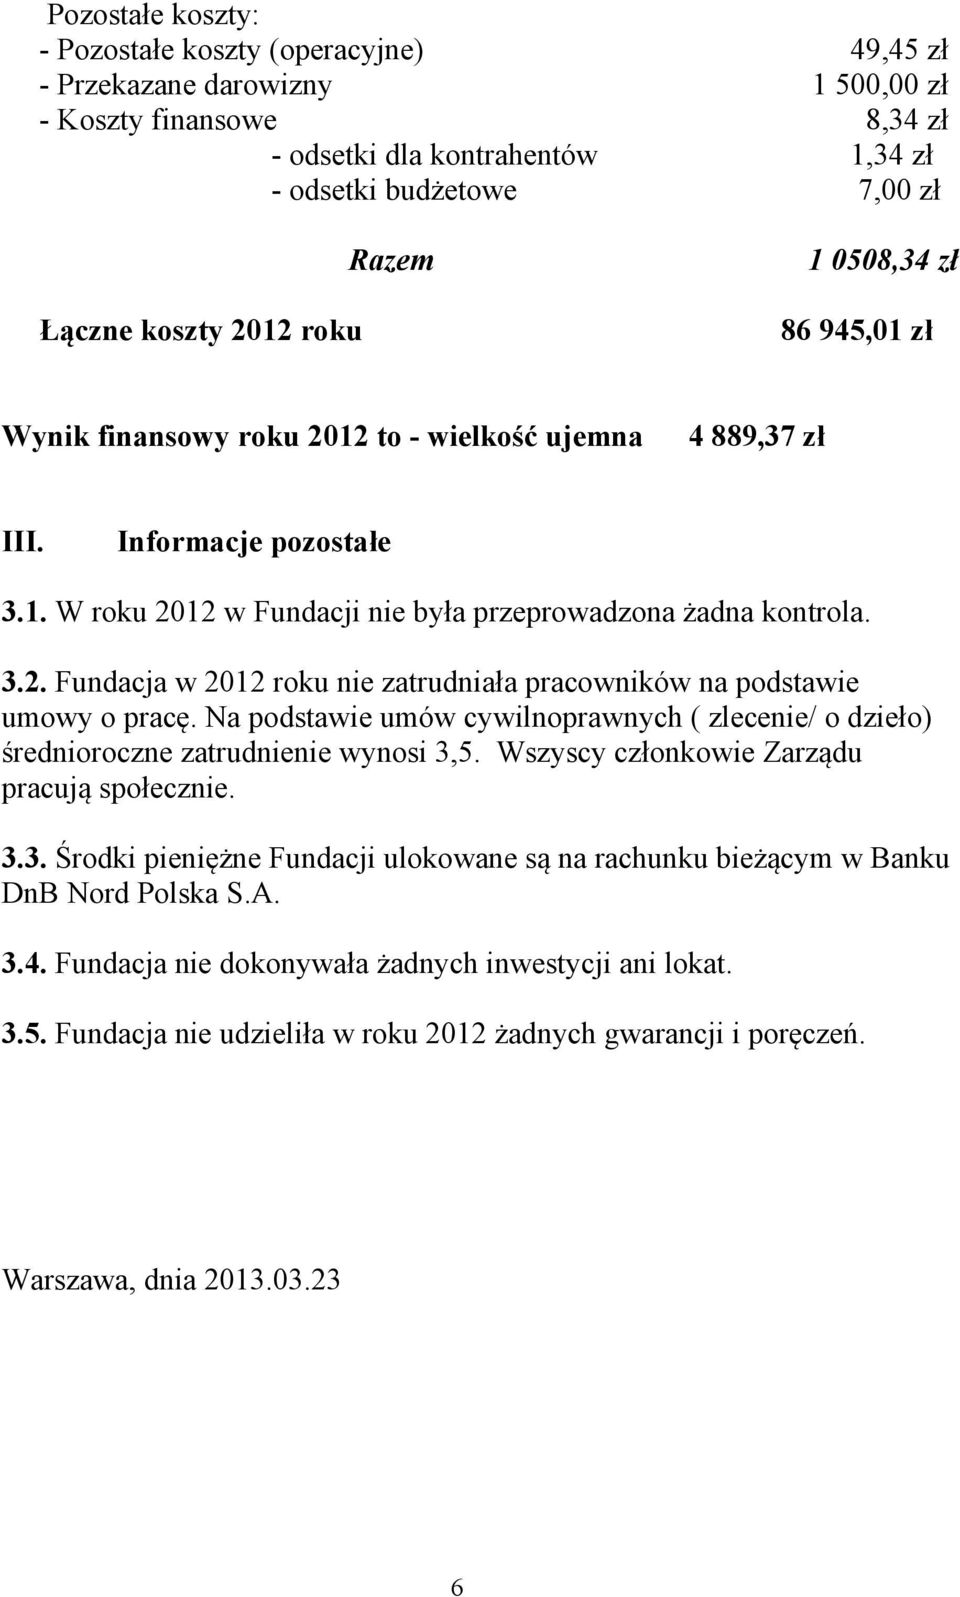 Na podstawie umów cywilnoprawnych ( zlecenie/ o dzieło) średnioroczne zatrudnienie wynosi 3,5. Wszyscy członkowie Zarządu pracują społecznie. 3.3. Środki pieniężne Fundacji ulokowane są na rachunku bieżącym w Banku DnB Nord Polska S.